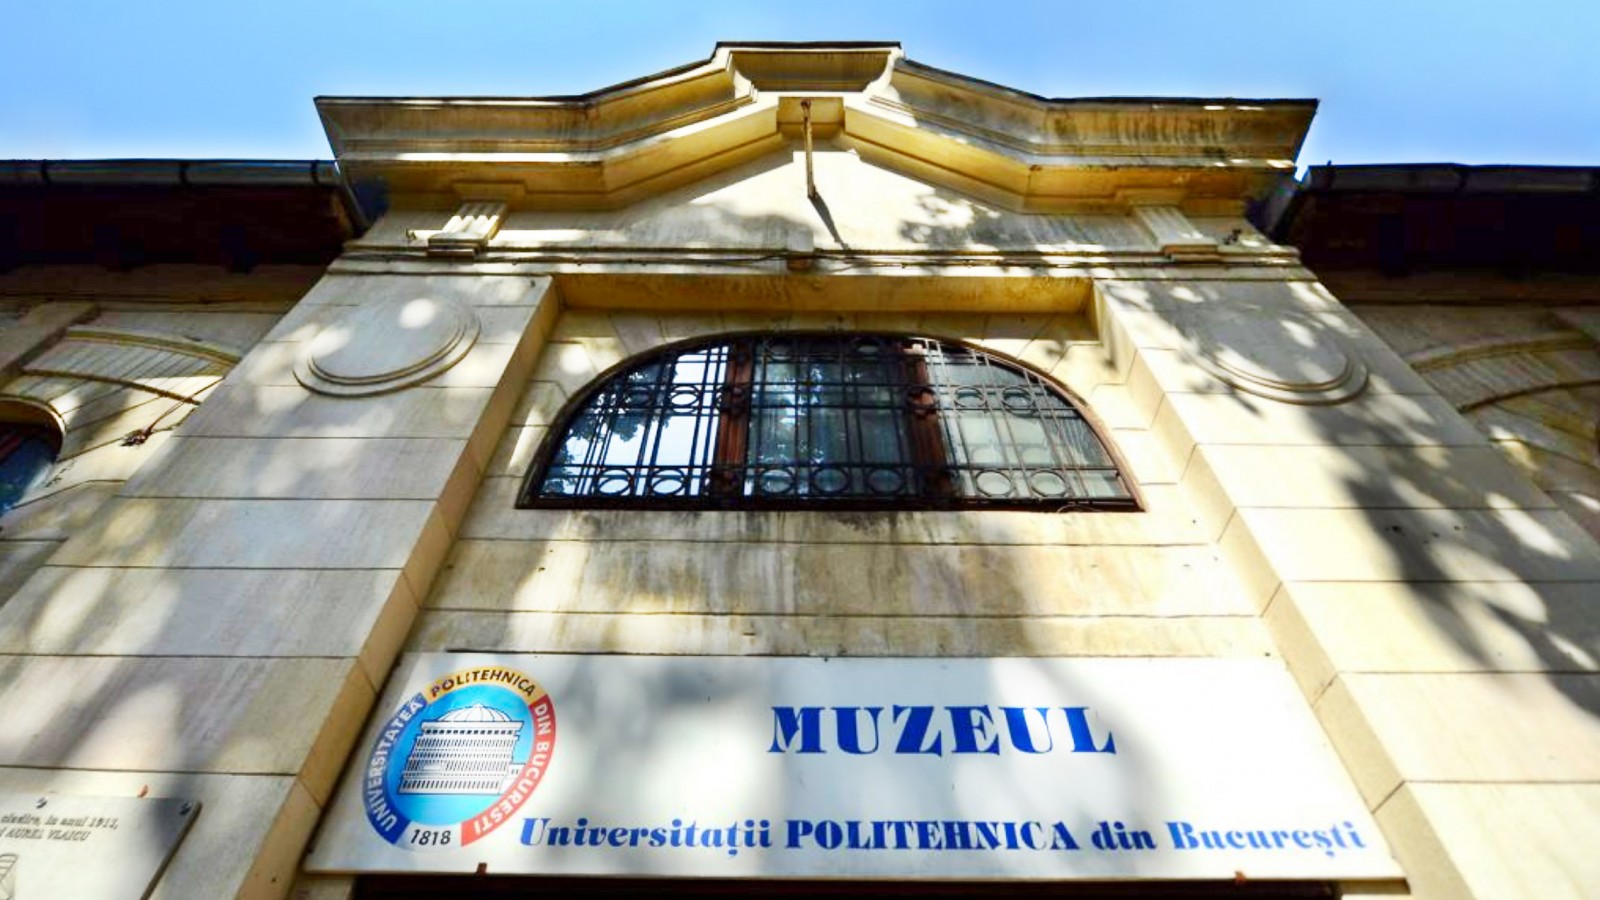 Muzeul Universitatii "POLITEHNICA"din Bucuresti